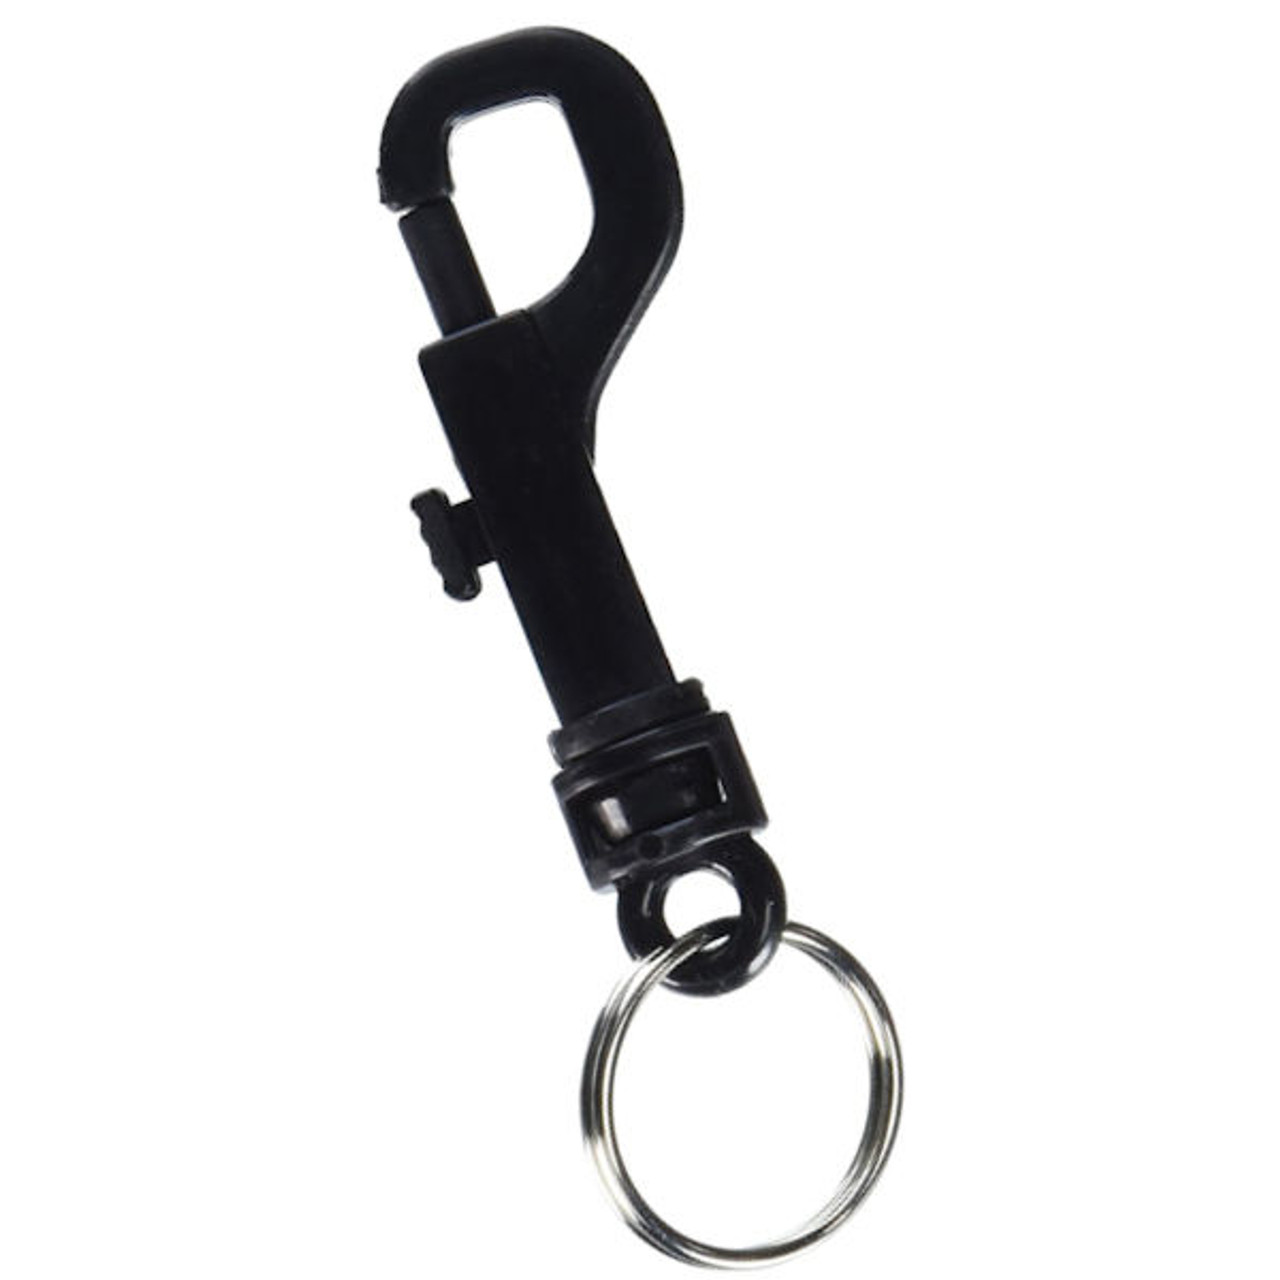 Lucky Line 45120 Black Plastic Snap Key Chain, Black (Bulk 100 Pack)